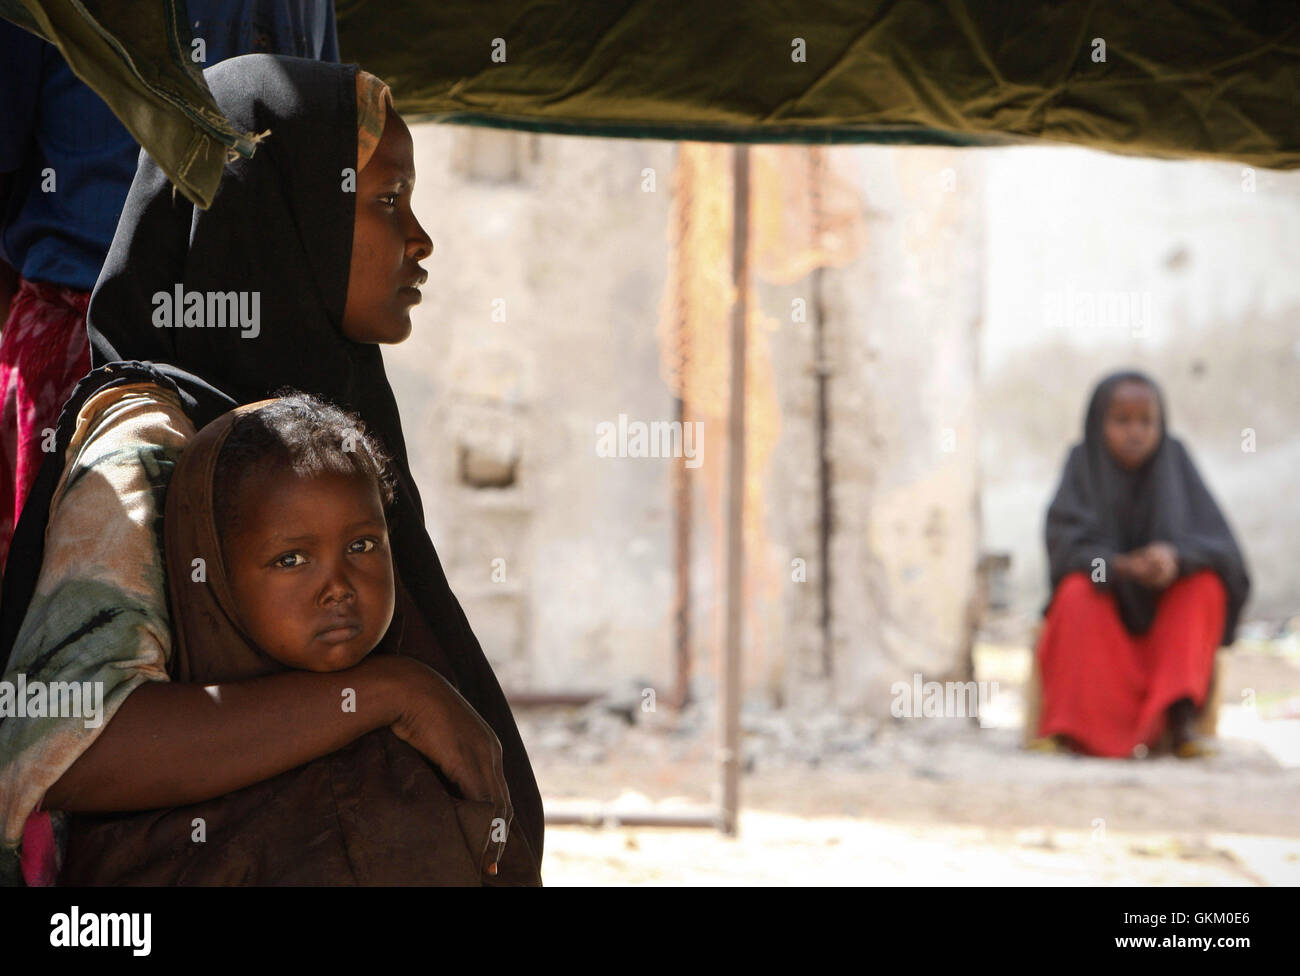 SOMALIA, Mogadischu: Ein Foto vom 5. Februar und vom leiteten Nationen Informationen Support-Team 6 Februar veröffentlicht, einer somalischen Frauen und ihr Kind warten in einem Zelt für einen medizinischen Check-up und Behandlung in Katar intern Lager In vertriebener Menschen (IDP) im Stadtteil Wardhigley von der somalischen Hauptstadt Mogadischu, wo die Mission der Afrikanischen Union in Somalia (AMISOM) Ärzte wurden die medizinischen Dienstleistungen für vertriebene Zivilisten. Die kostenlose medizinische Versorgung und Verteilung von Moskitonetzen gehörten zu einem einwöchigen Programm namens Tarehe Sita - Kiswahili für 6 Februar - das ist Stockfoto